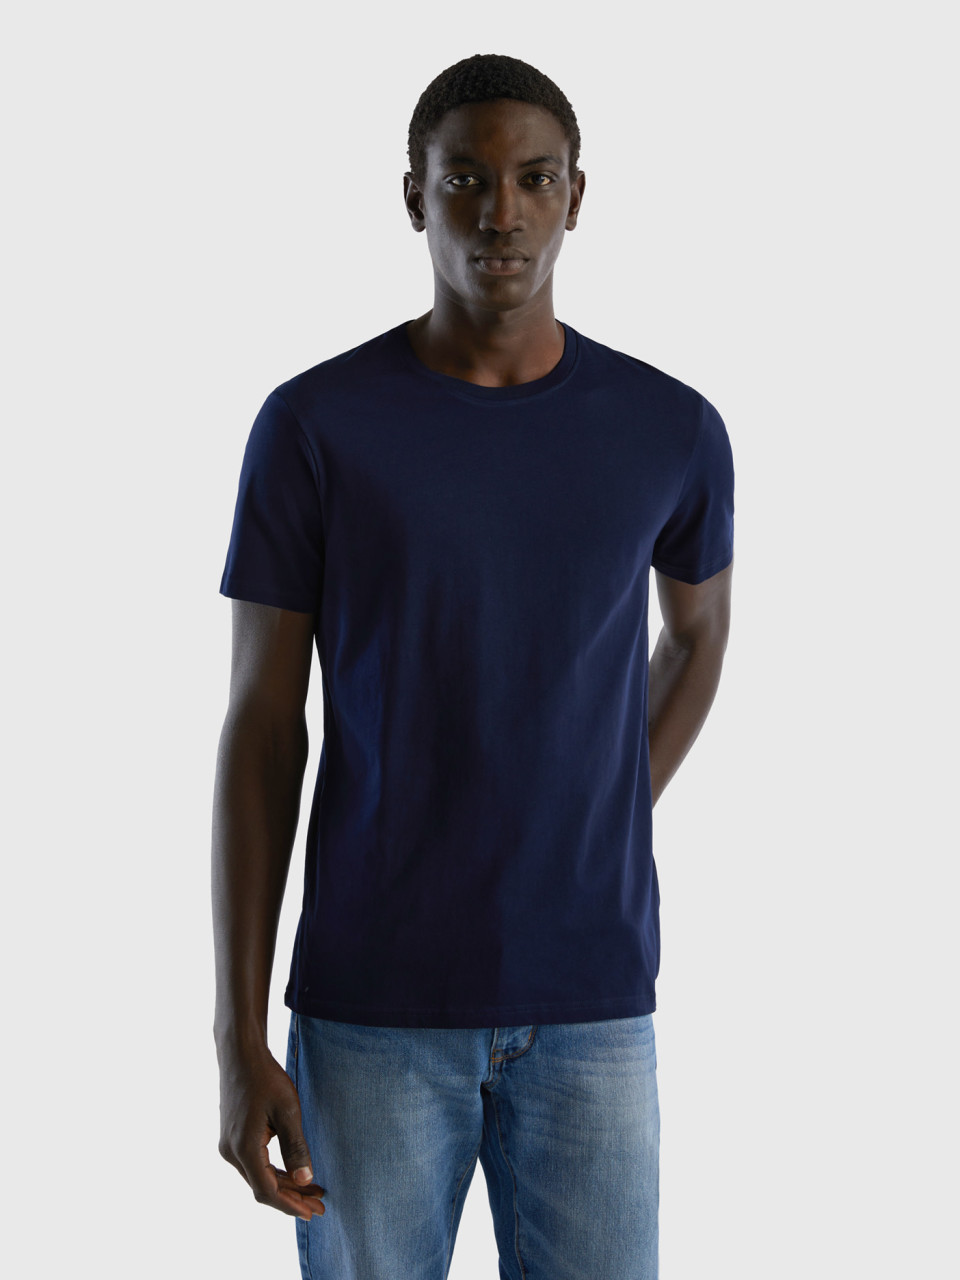 Benetton, Dark Blue T-shirt, Dark Blue, Men